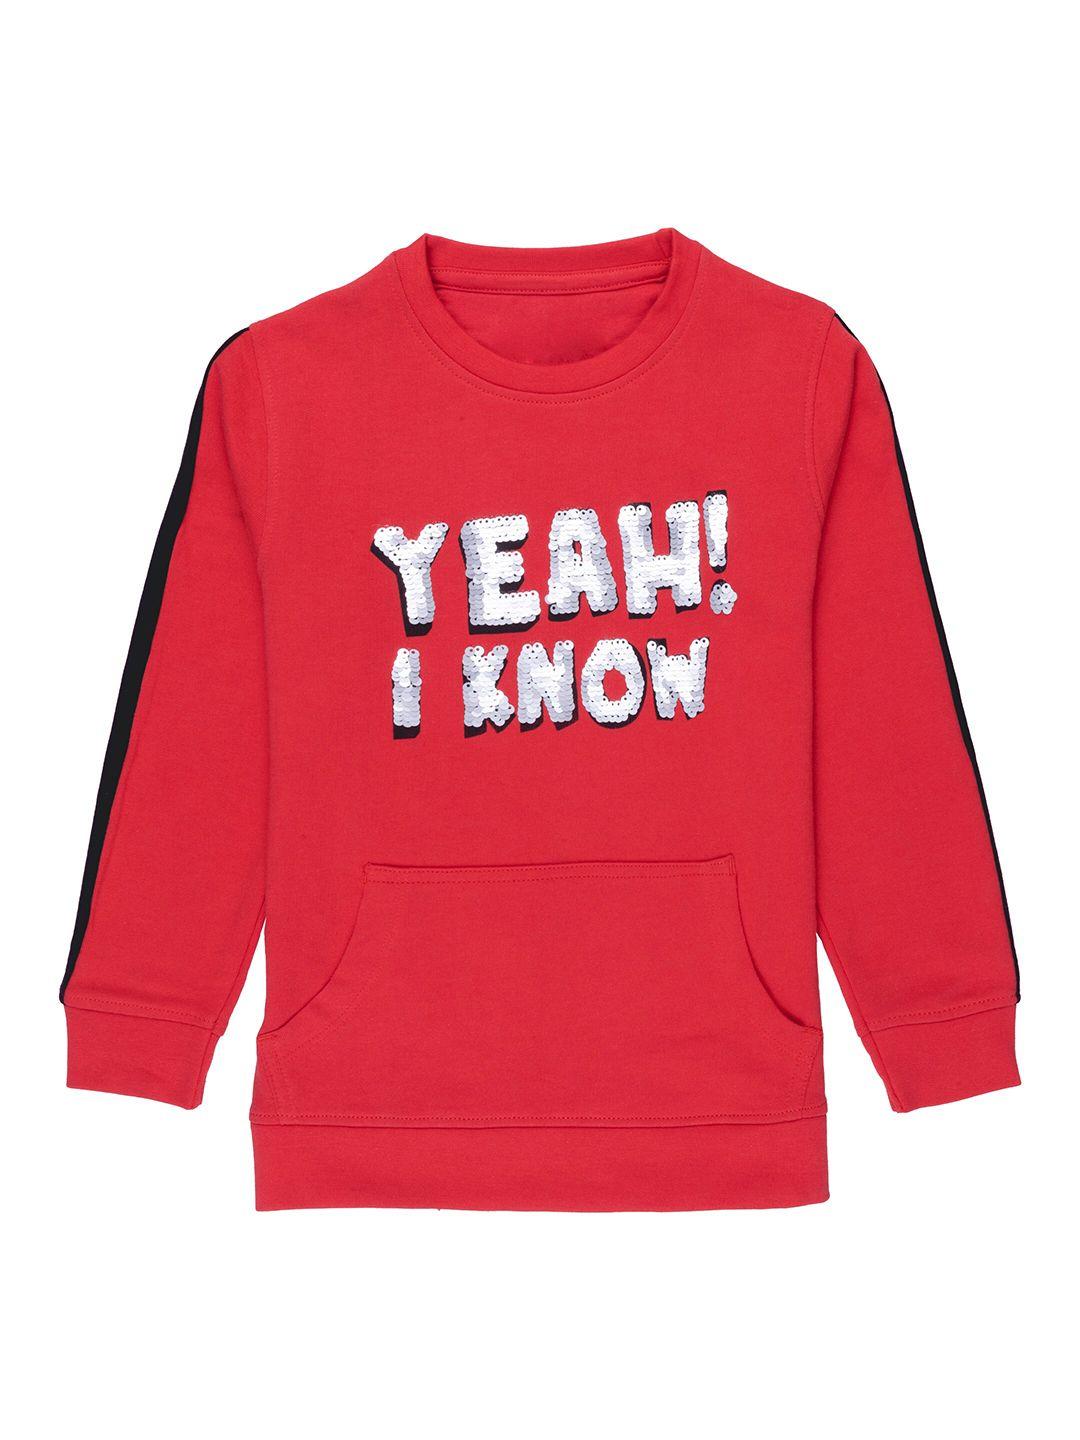 nuluv unisex kids red printed sweatshirt